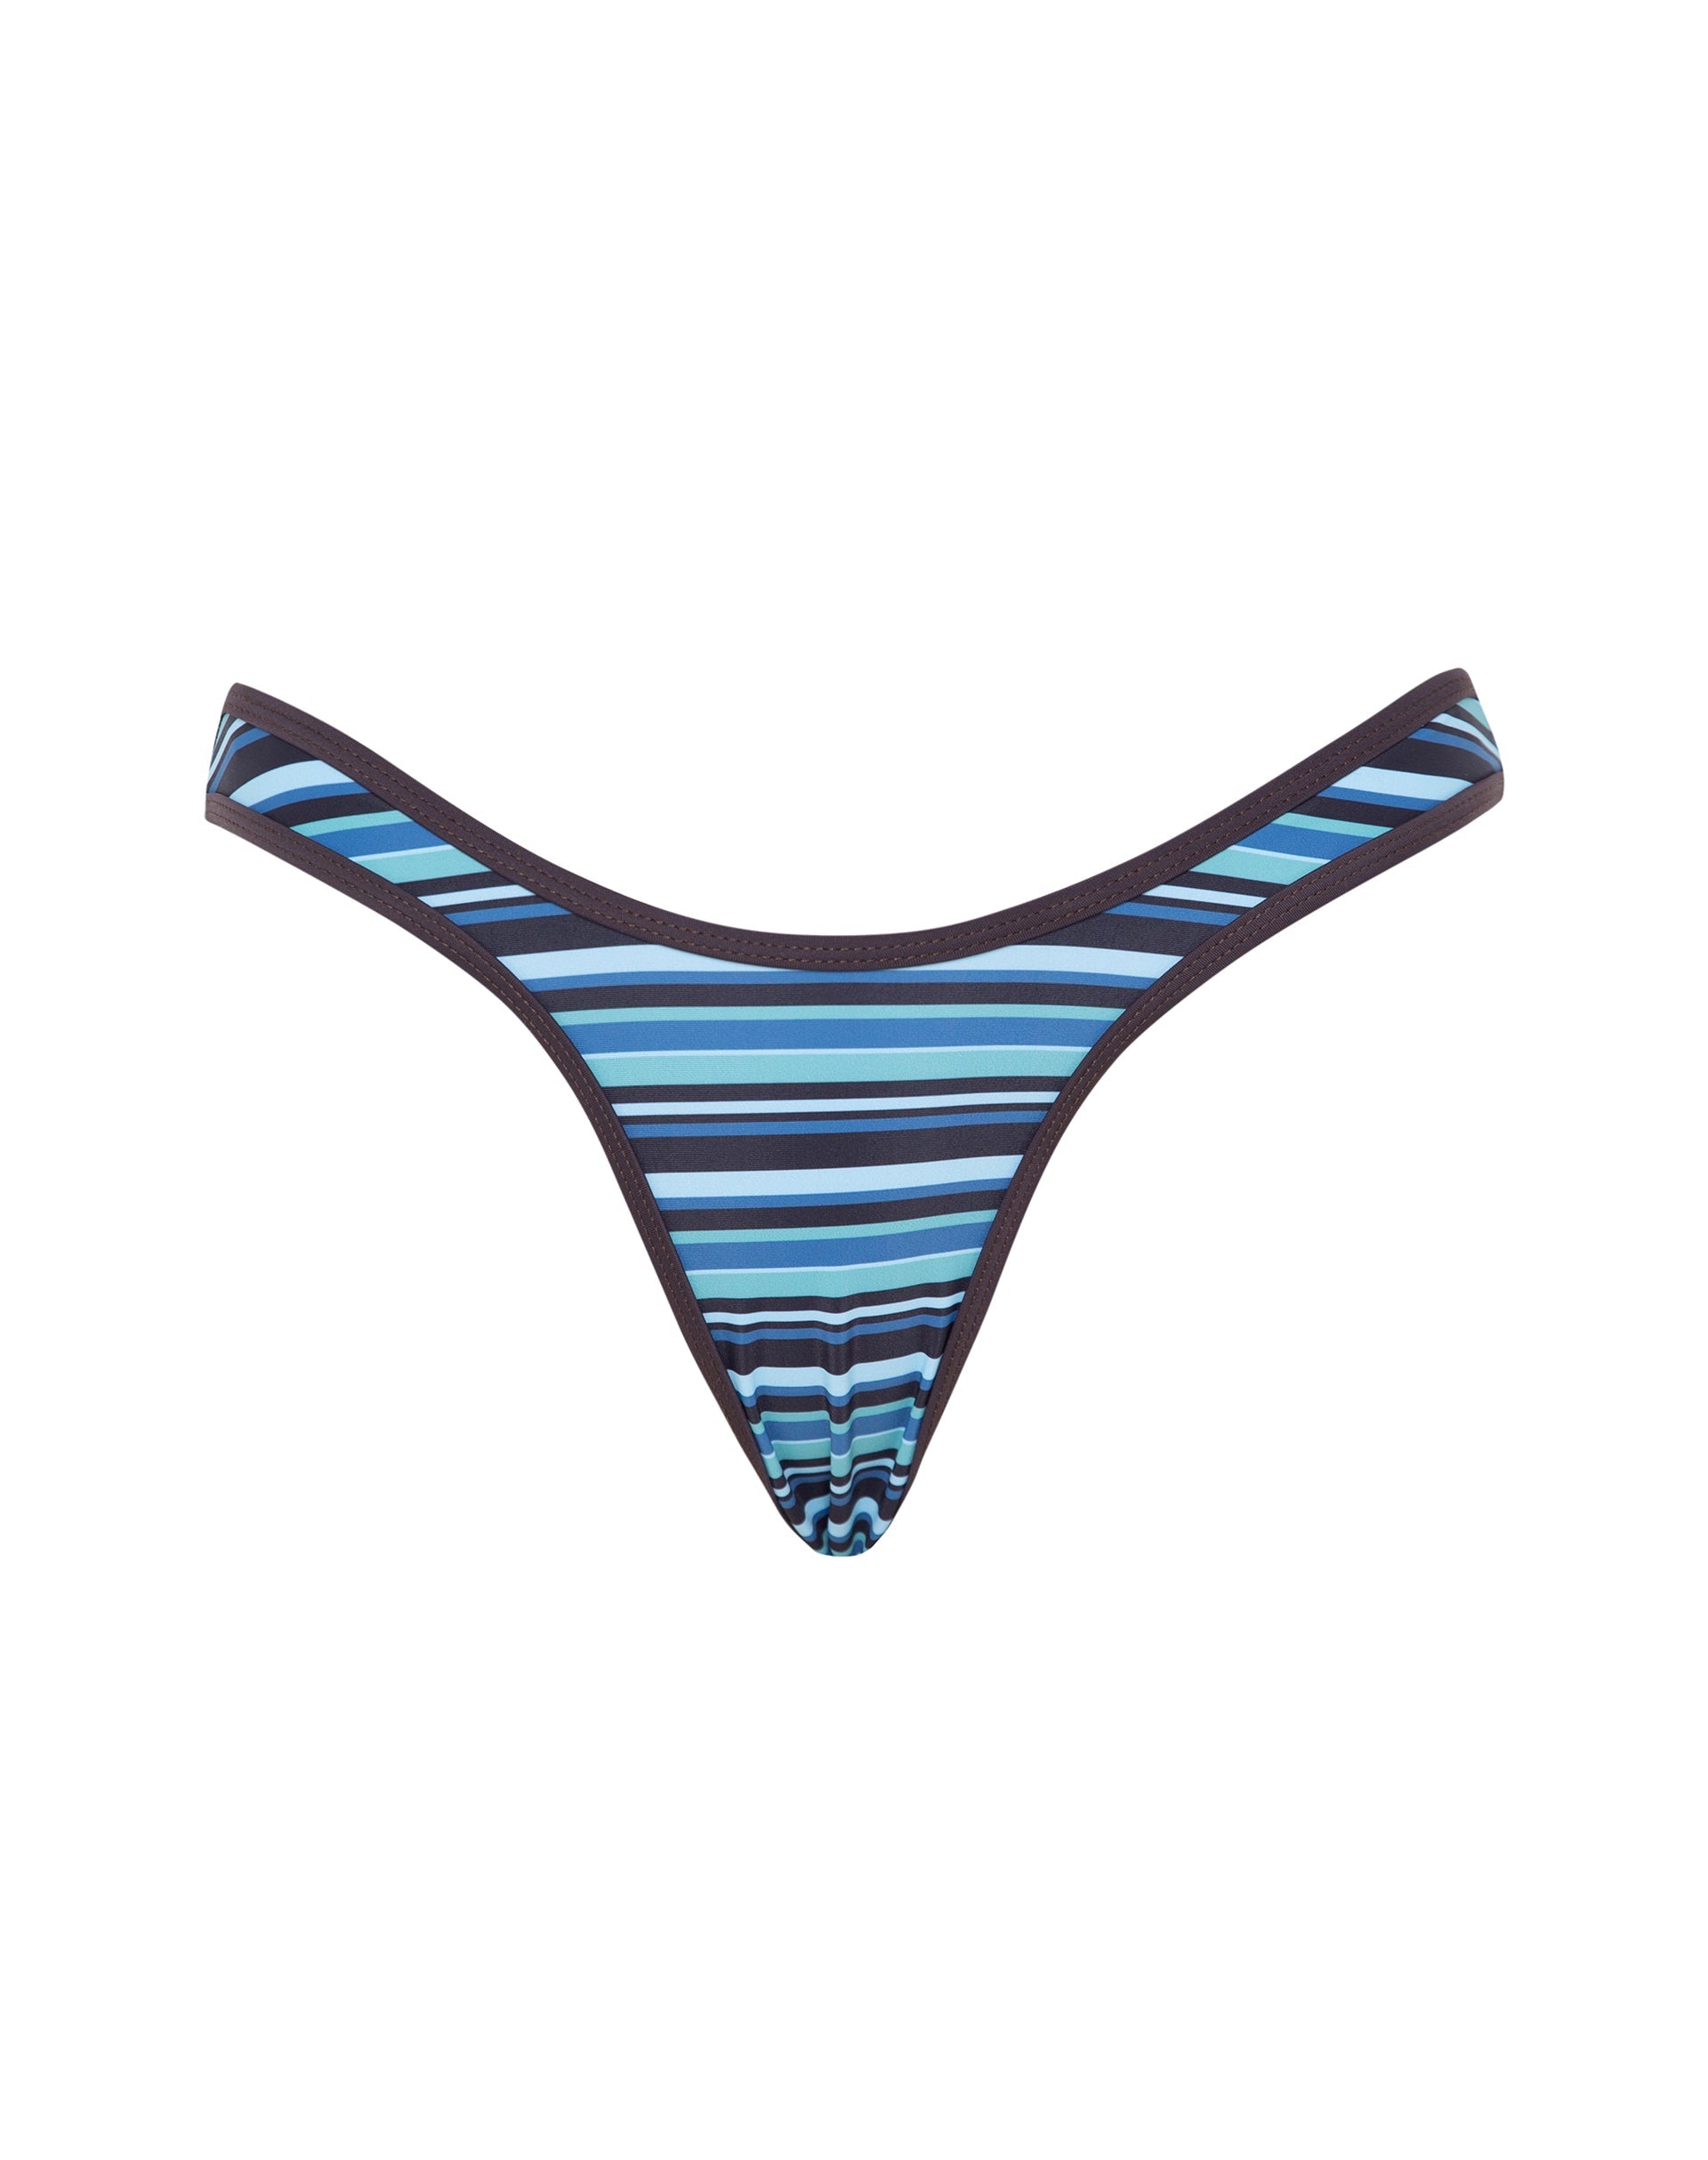 Image of Farida Bikini Bottom in Stripe Blue with Brown Binding